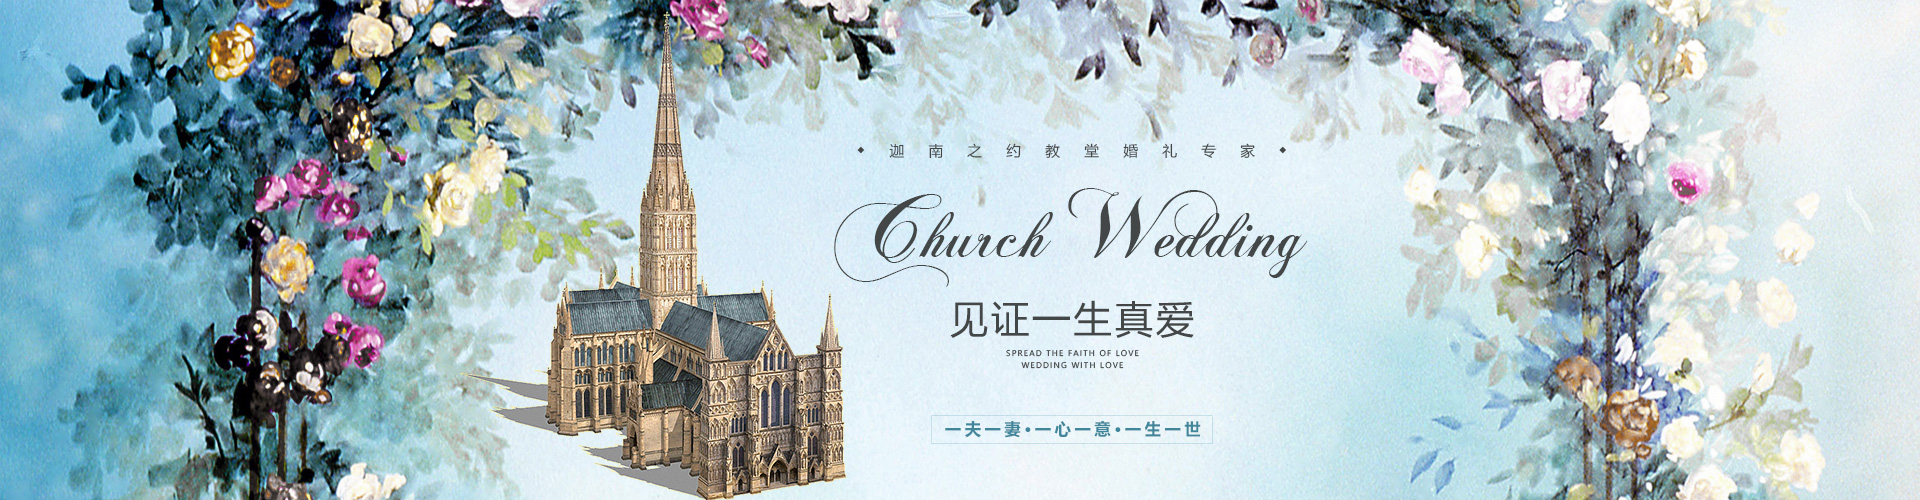 婚礼策划,北京婚礼策划,婚庆公司,北京婚庆公司,教堂婚礼